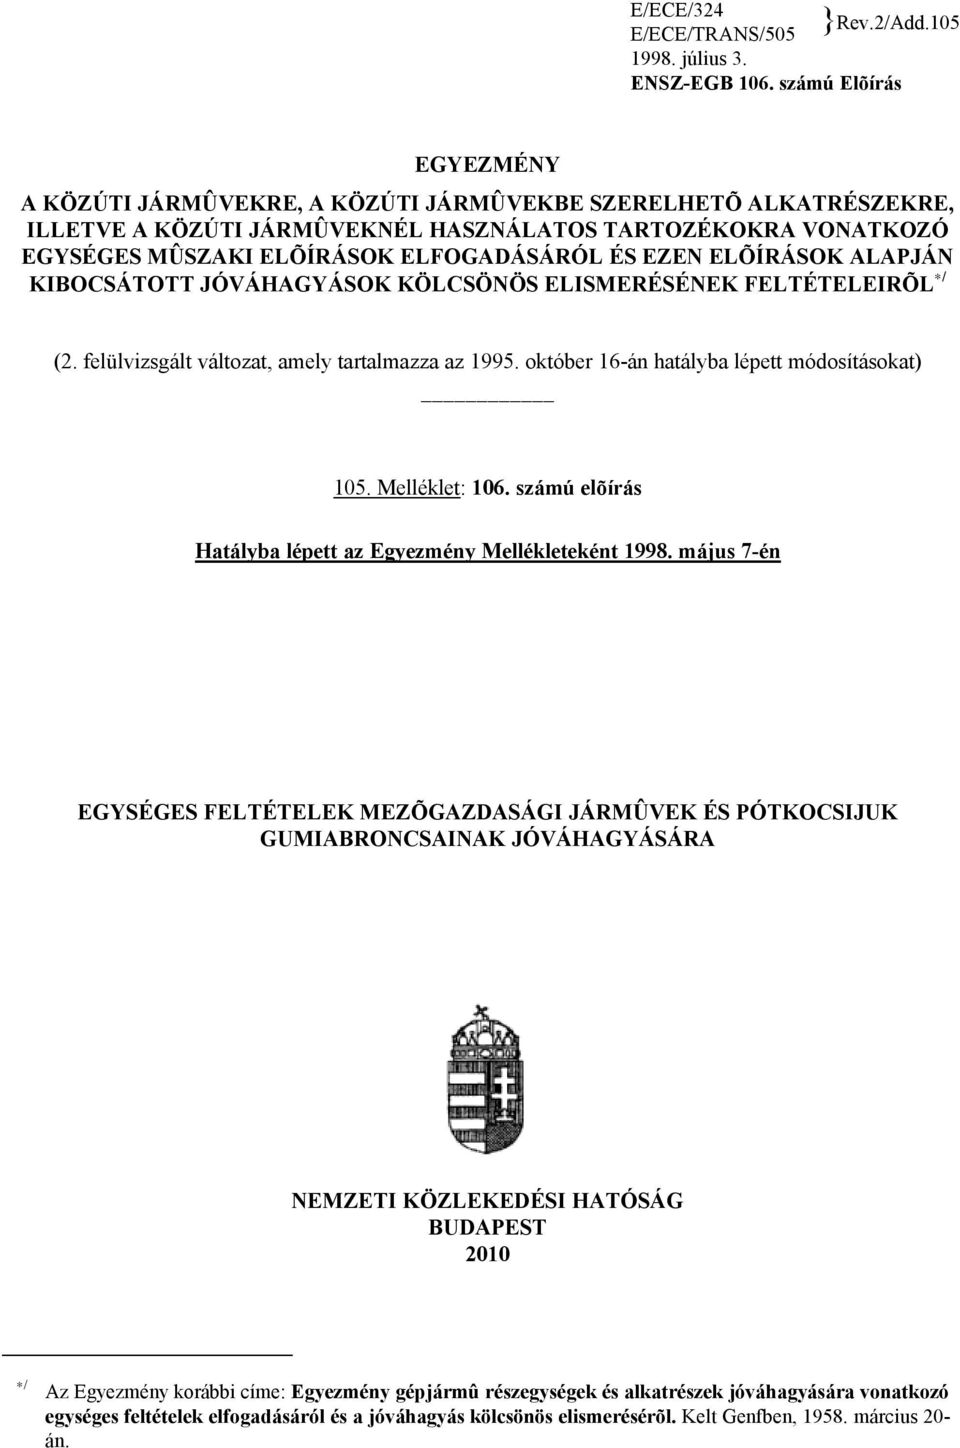 EZEN ELÕÍRÁSOK ALAPJÁN KIBOCSÁTOTT JÓVÁHAGYÁSOK KÖLCSÖNÖS ELISMERÉSÉNEK FELTÉTELEIRÕL */ (2. felülvizsgált változat, amely tartalmazza az 1995. október 16-án hatályba lépett módosításokat) 105.